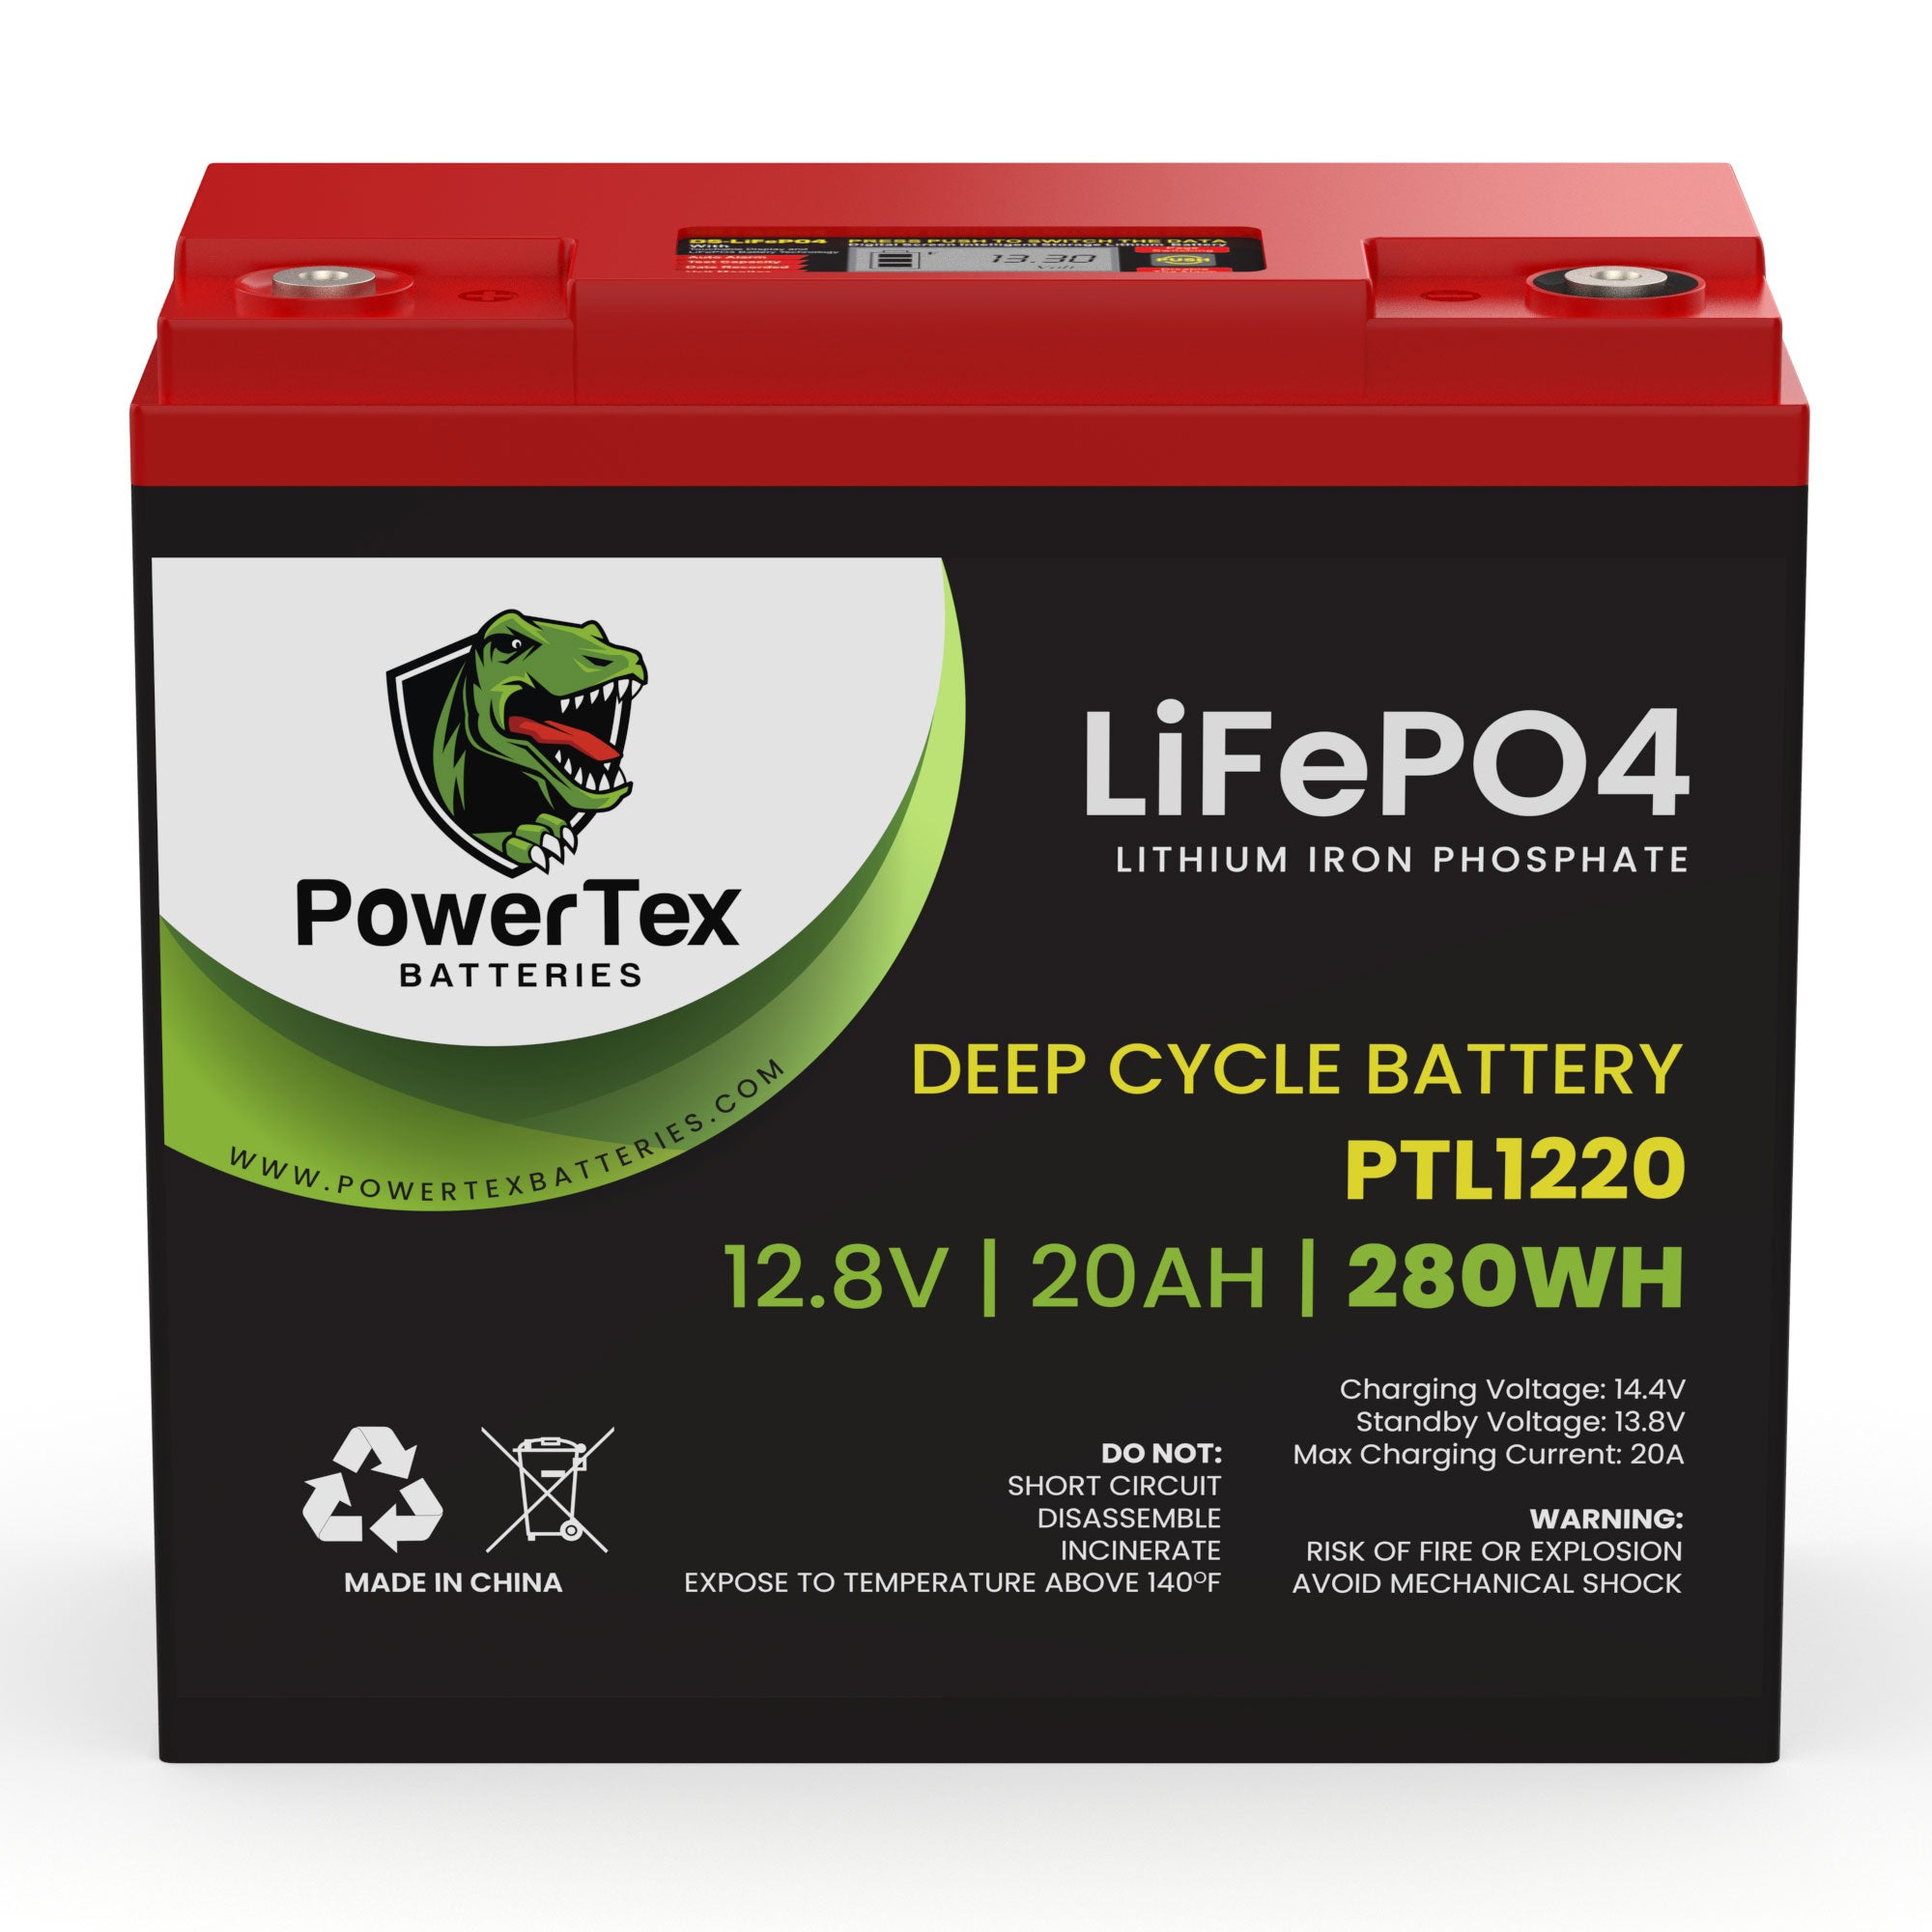 PowerTex Batteries 12V 20Ah Lithium Ion LiFePO4 Rechargeable Battery Battery PowerTex Batteries 